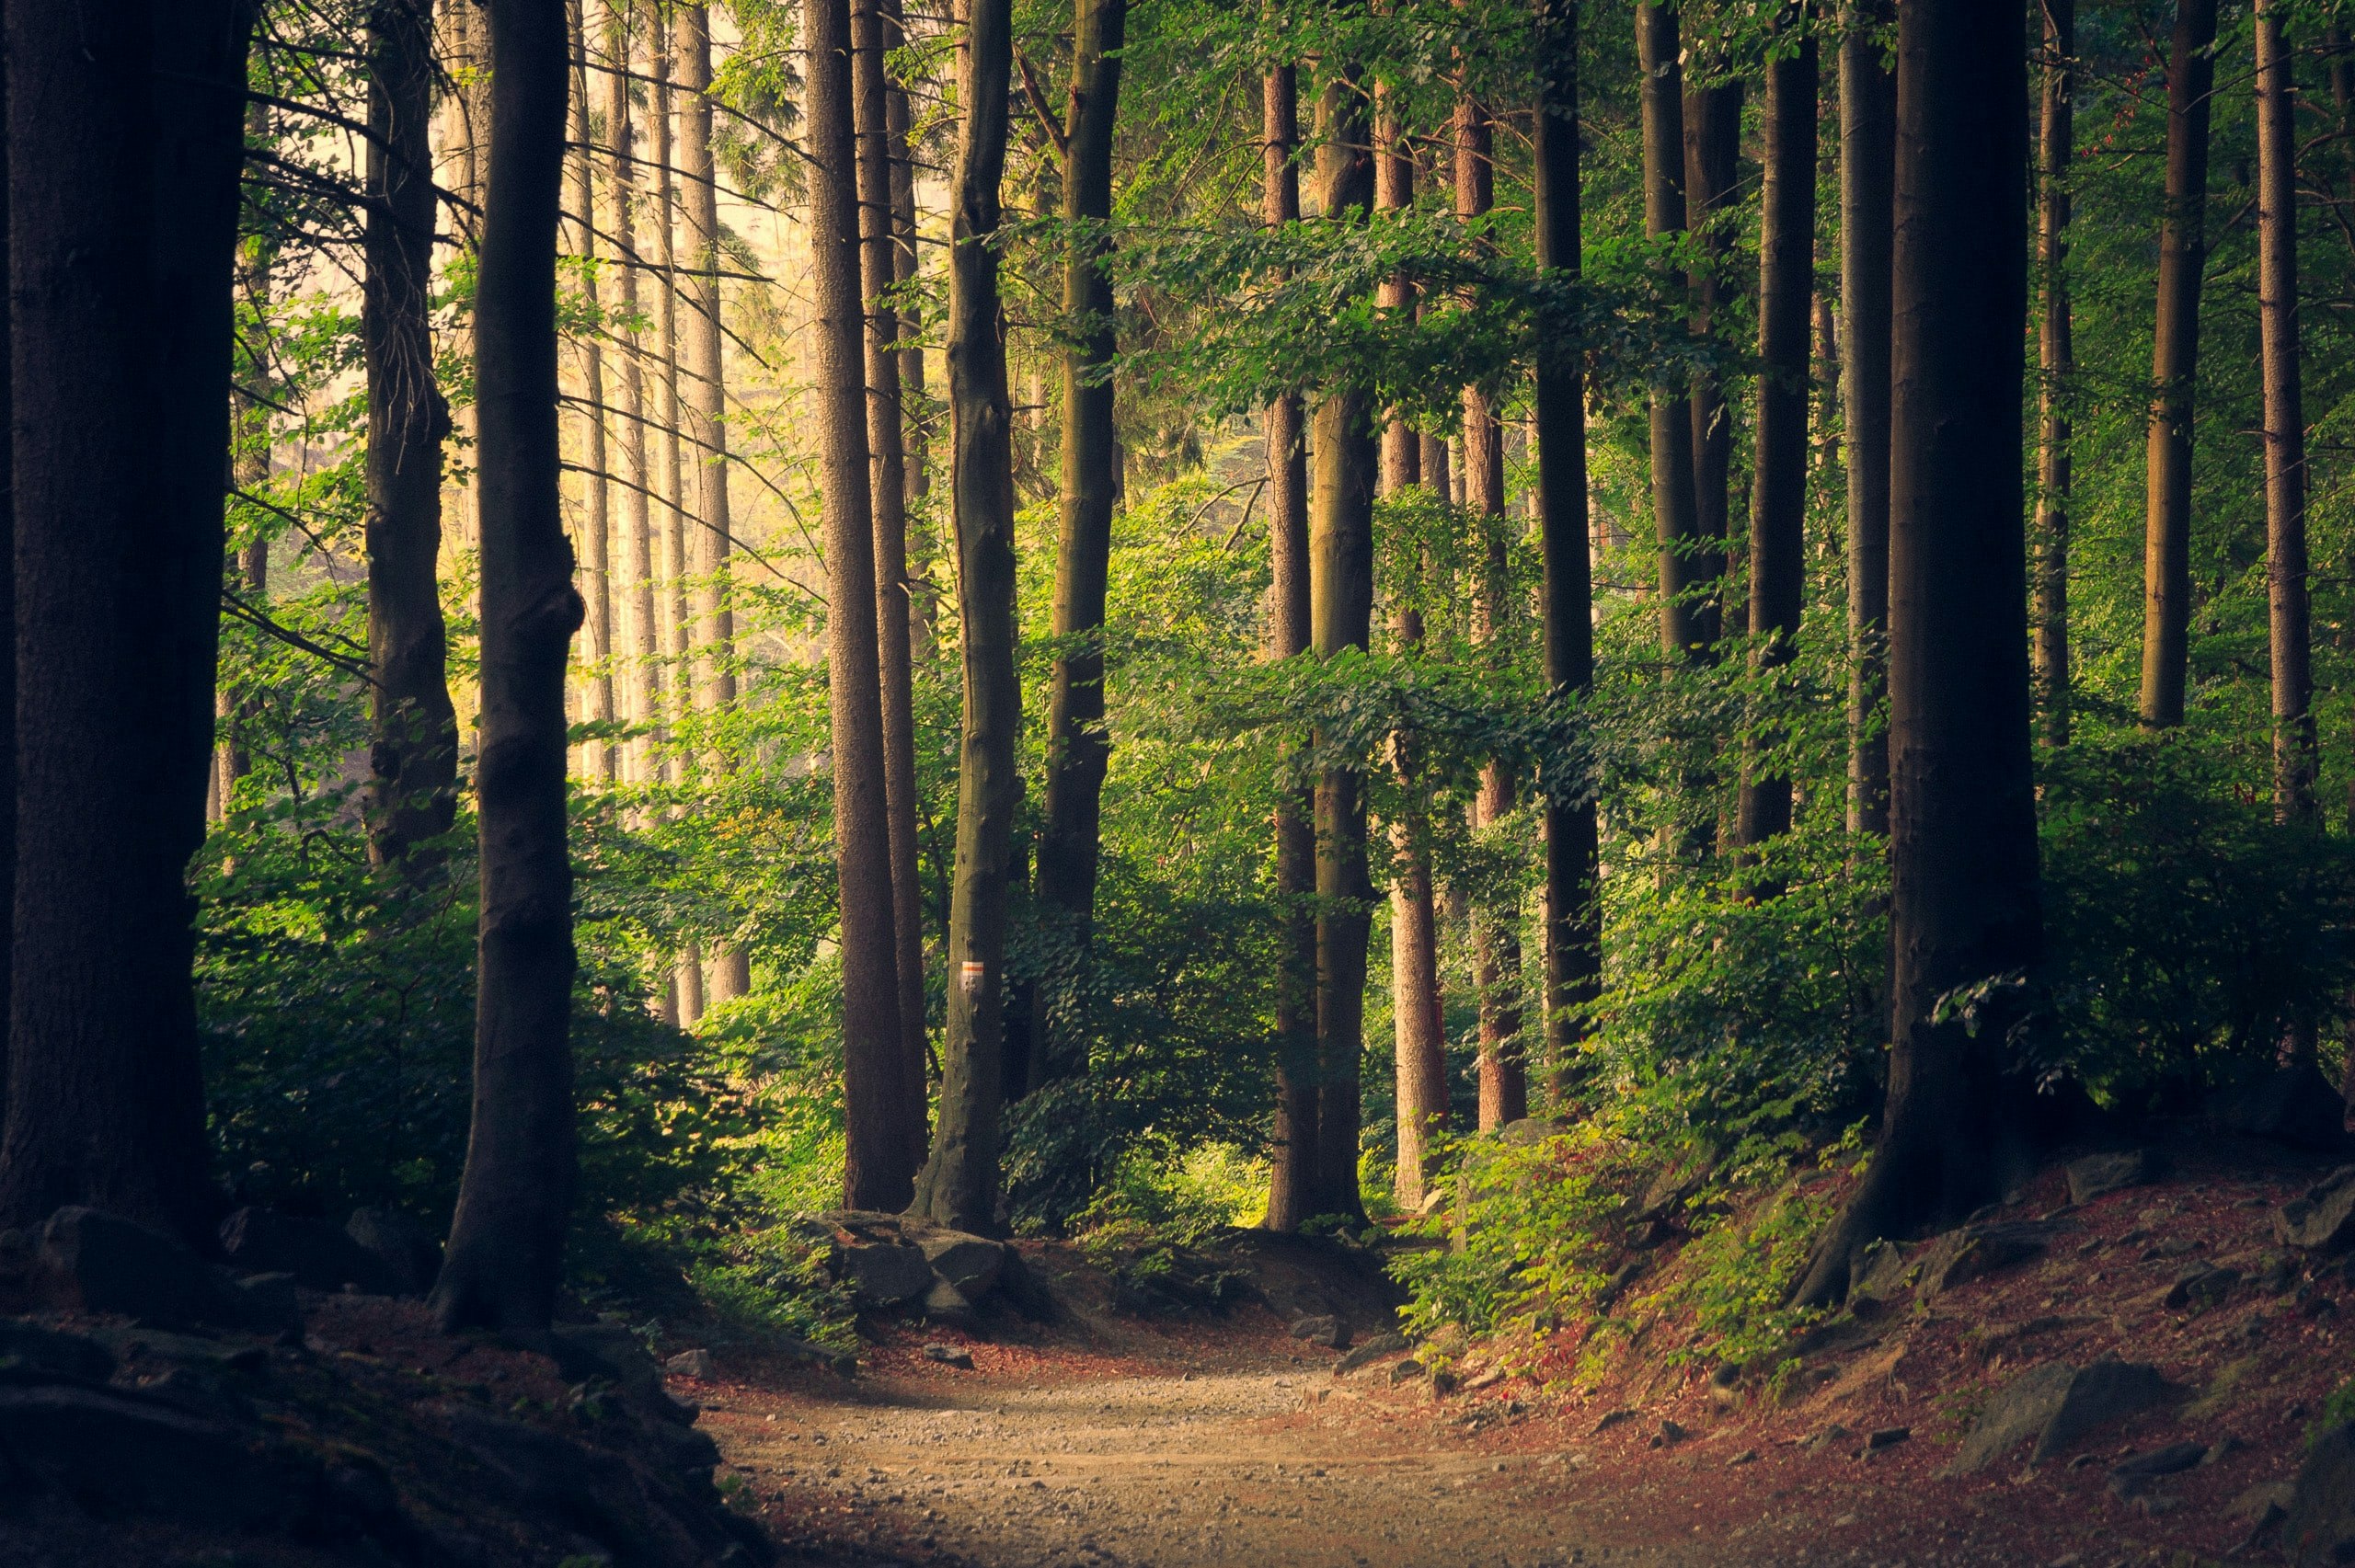 A path through a forest